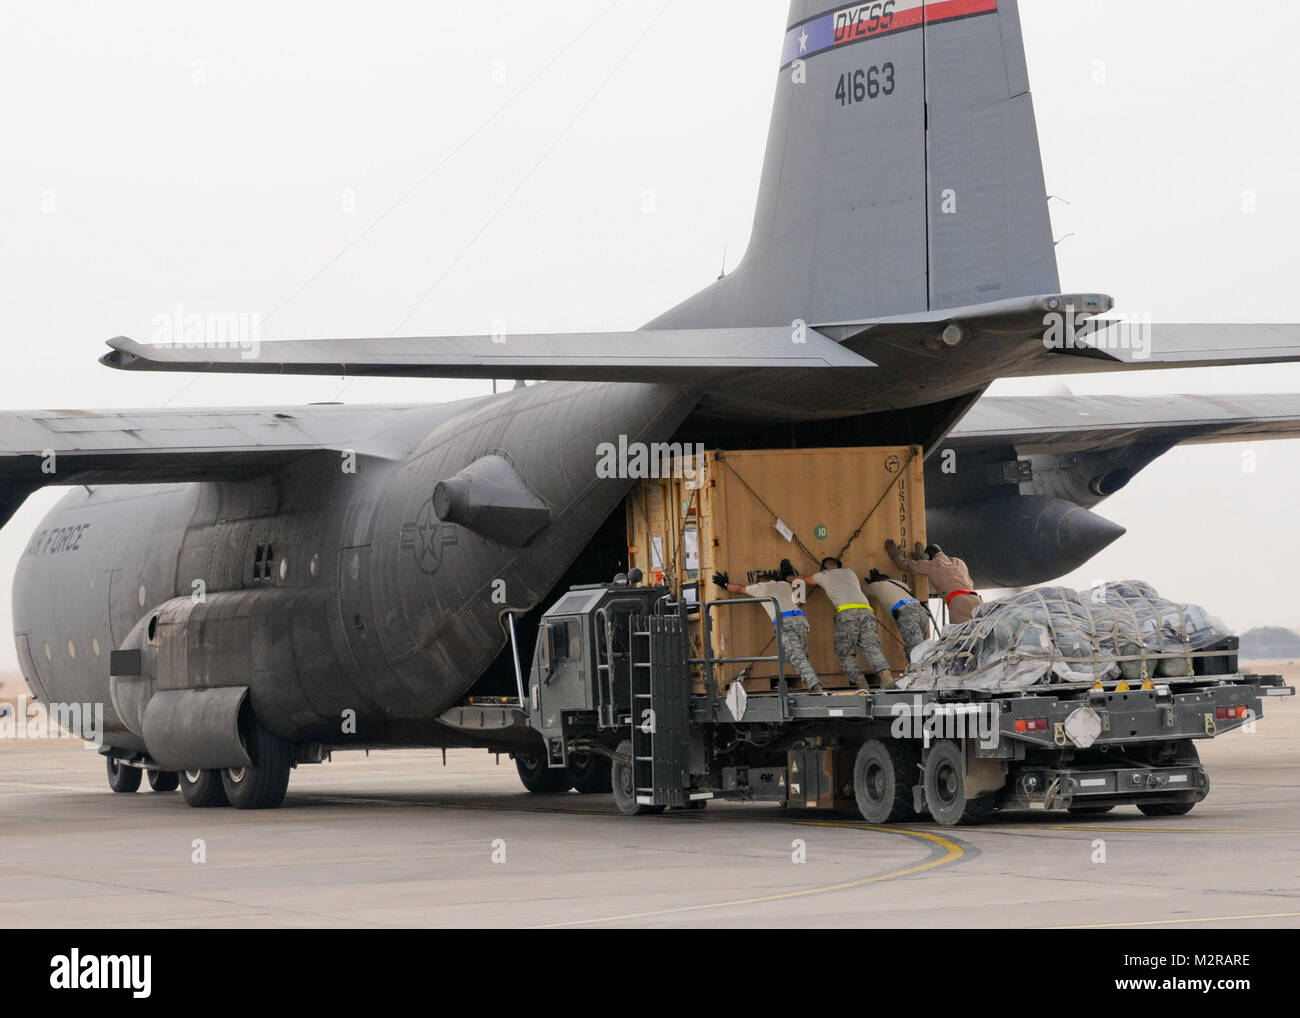 Les membres du Service avec le 407e groupe expéditionnaire de la charger les conteneurs de fret sur un C-130 sur la base d'opérations d'urgence Adder le 26 octobre. Ces avions ont transporté l'essentiel des membres du service américain de le redéployer. L'aéronef et l'équipage sont occupés pendant le prélèvement des forces en Iraq. Chargement par United States Forces - Iraq (inactif) Banque D'Images